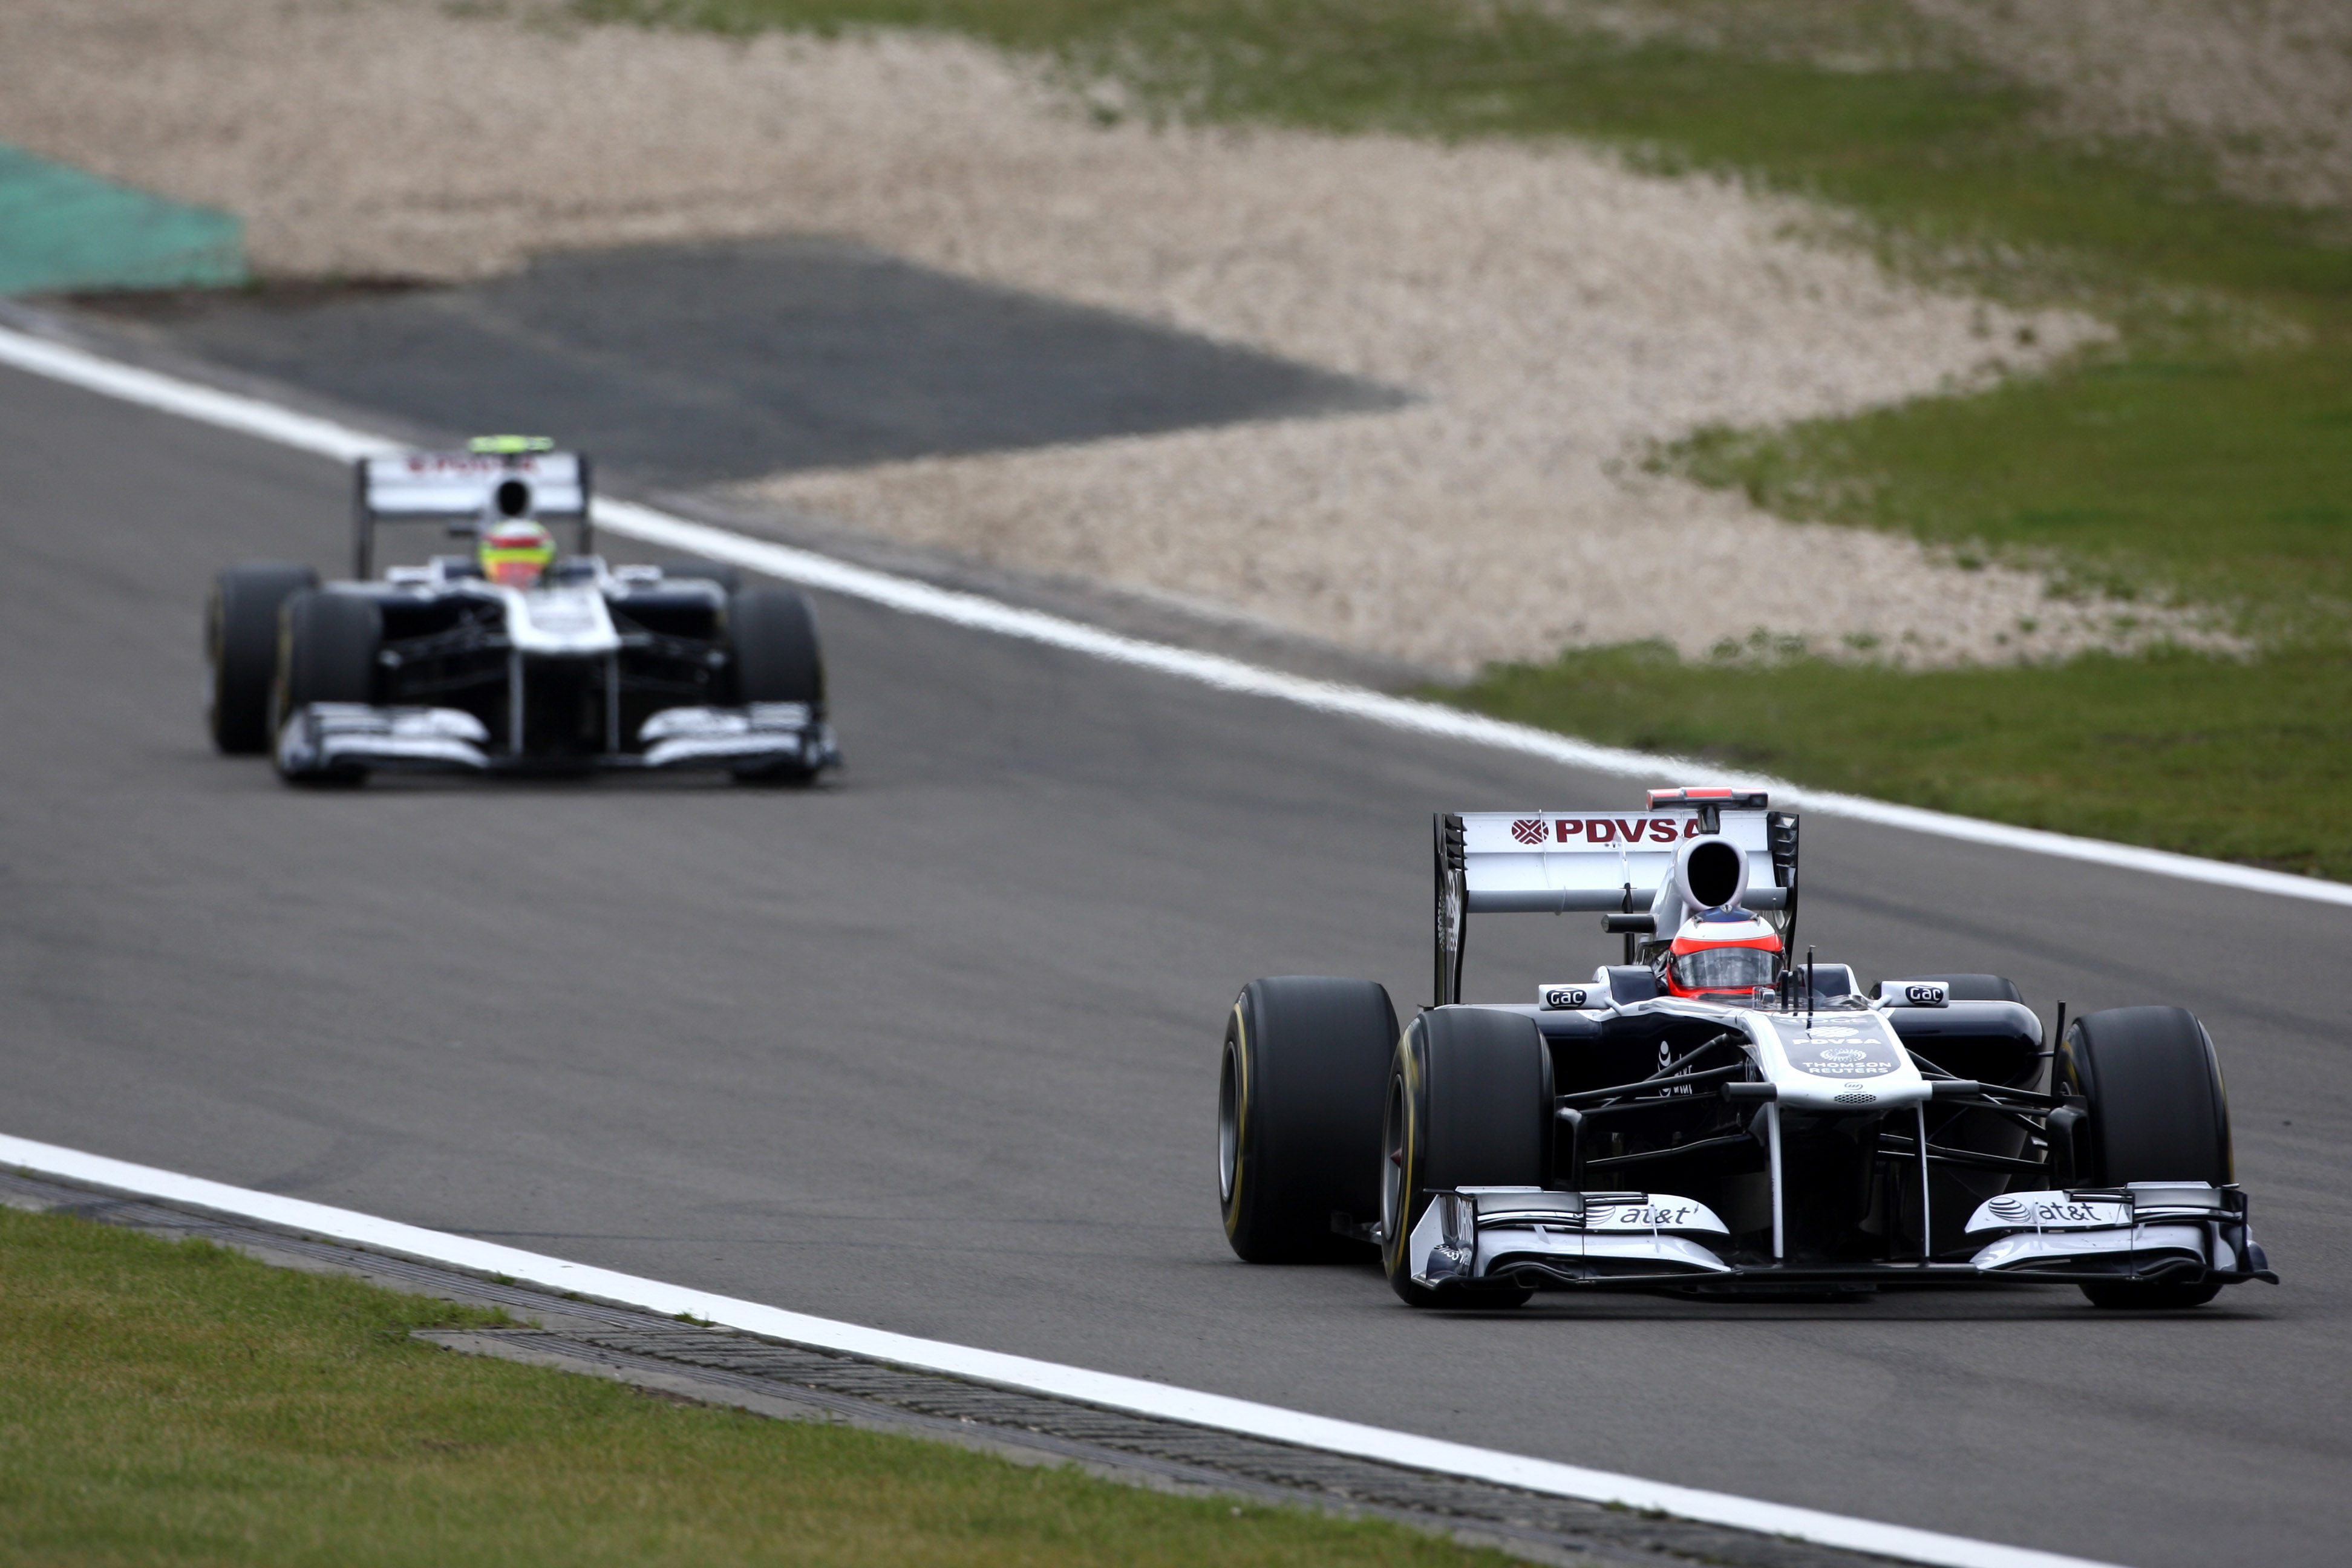 Nürburgring was testsessie voor Williams